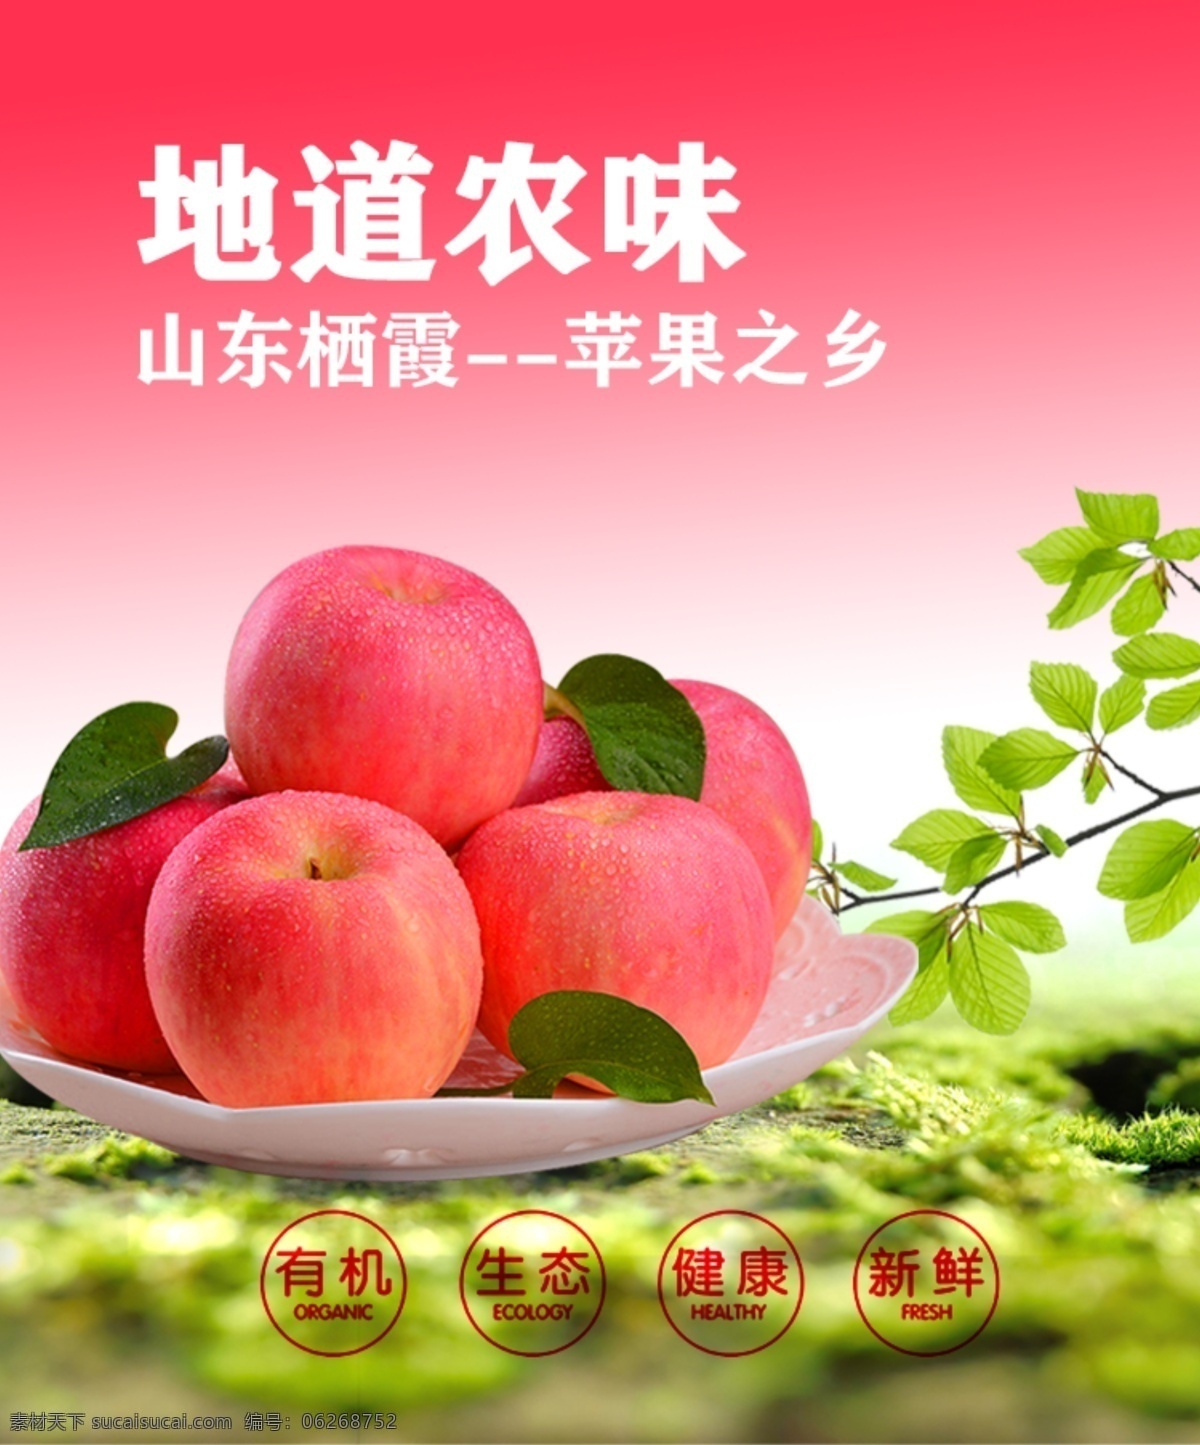 栖霞苹果 红苹果 水果psd 有机生态 红色与绿色 树叶 水果淘宝 粉色